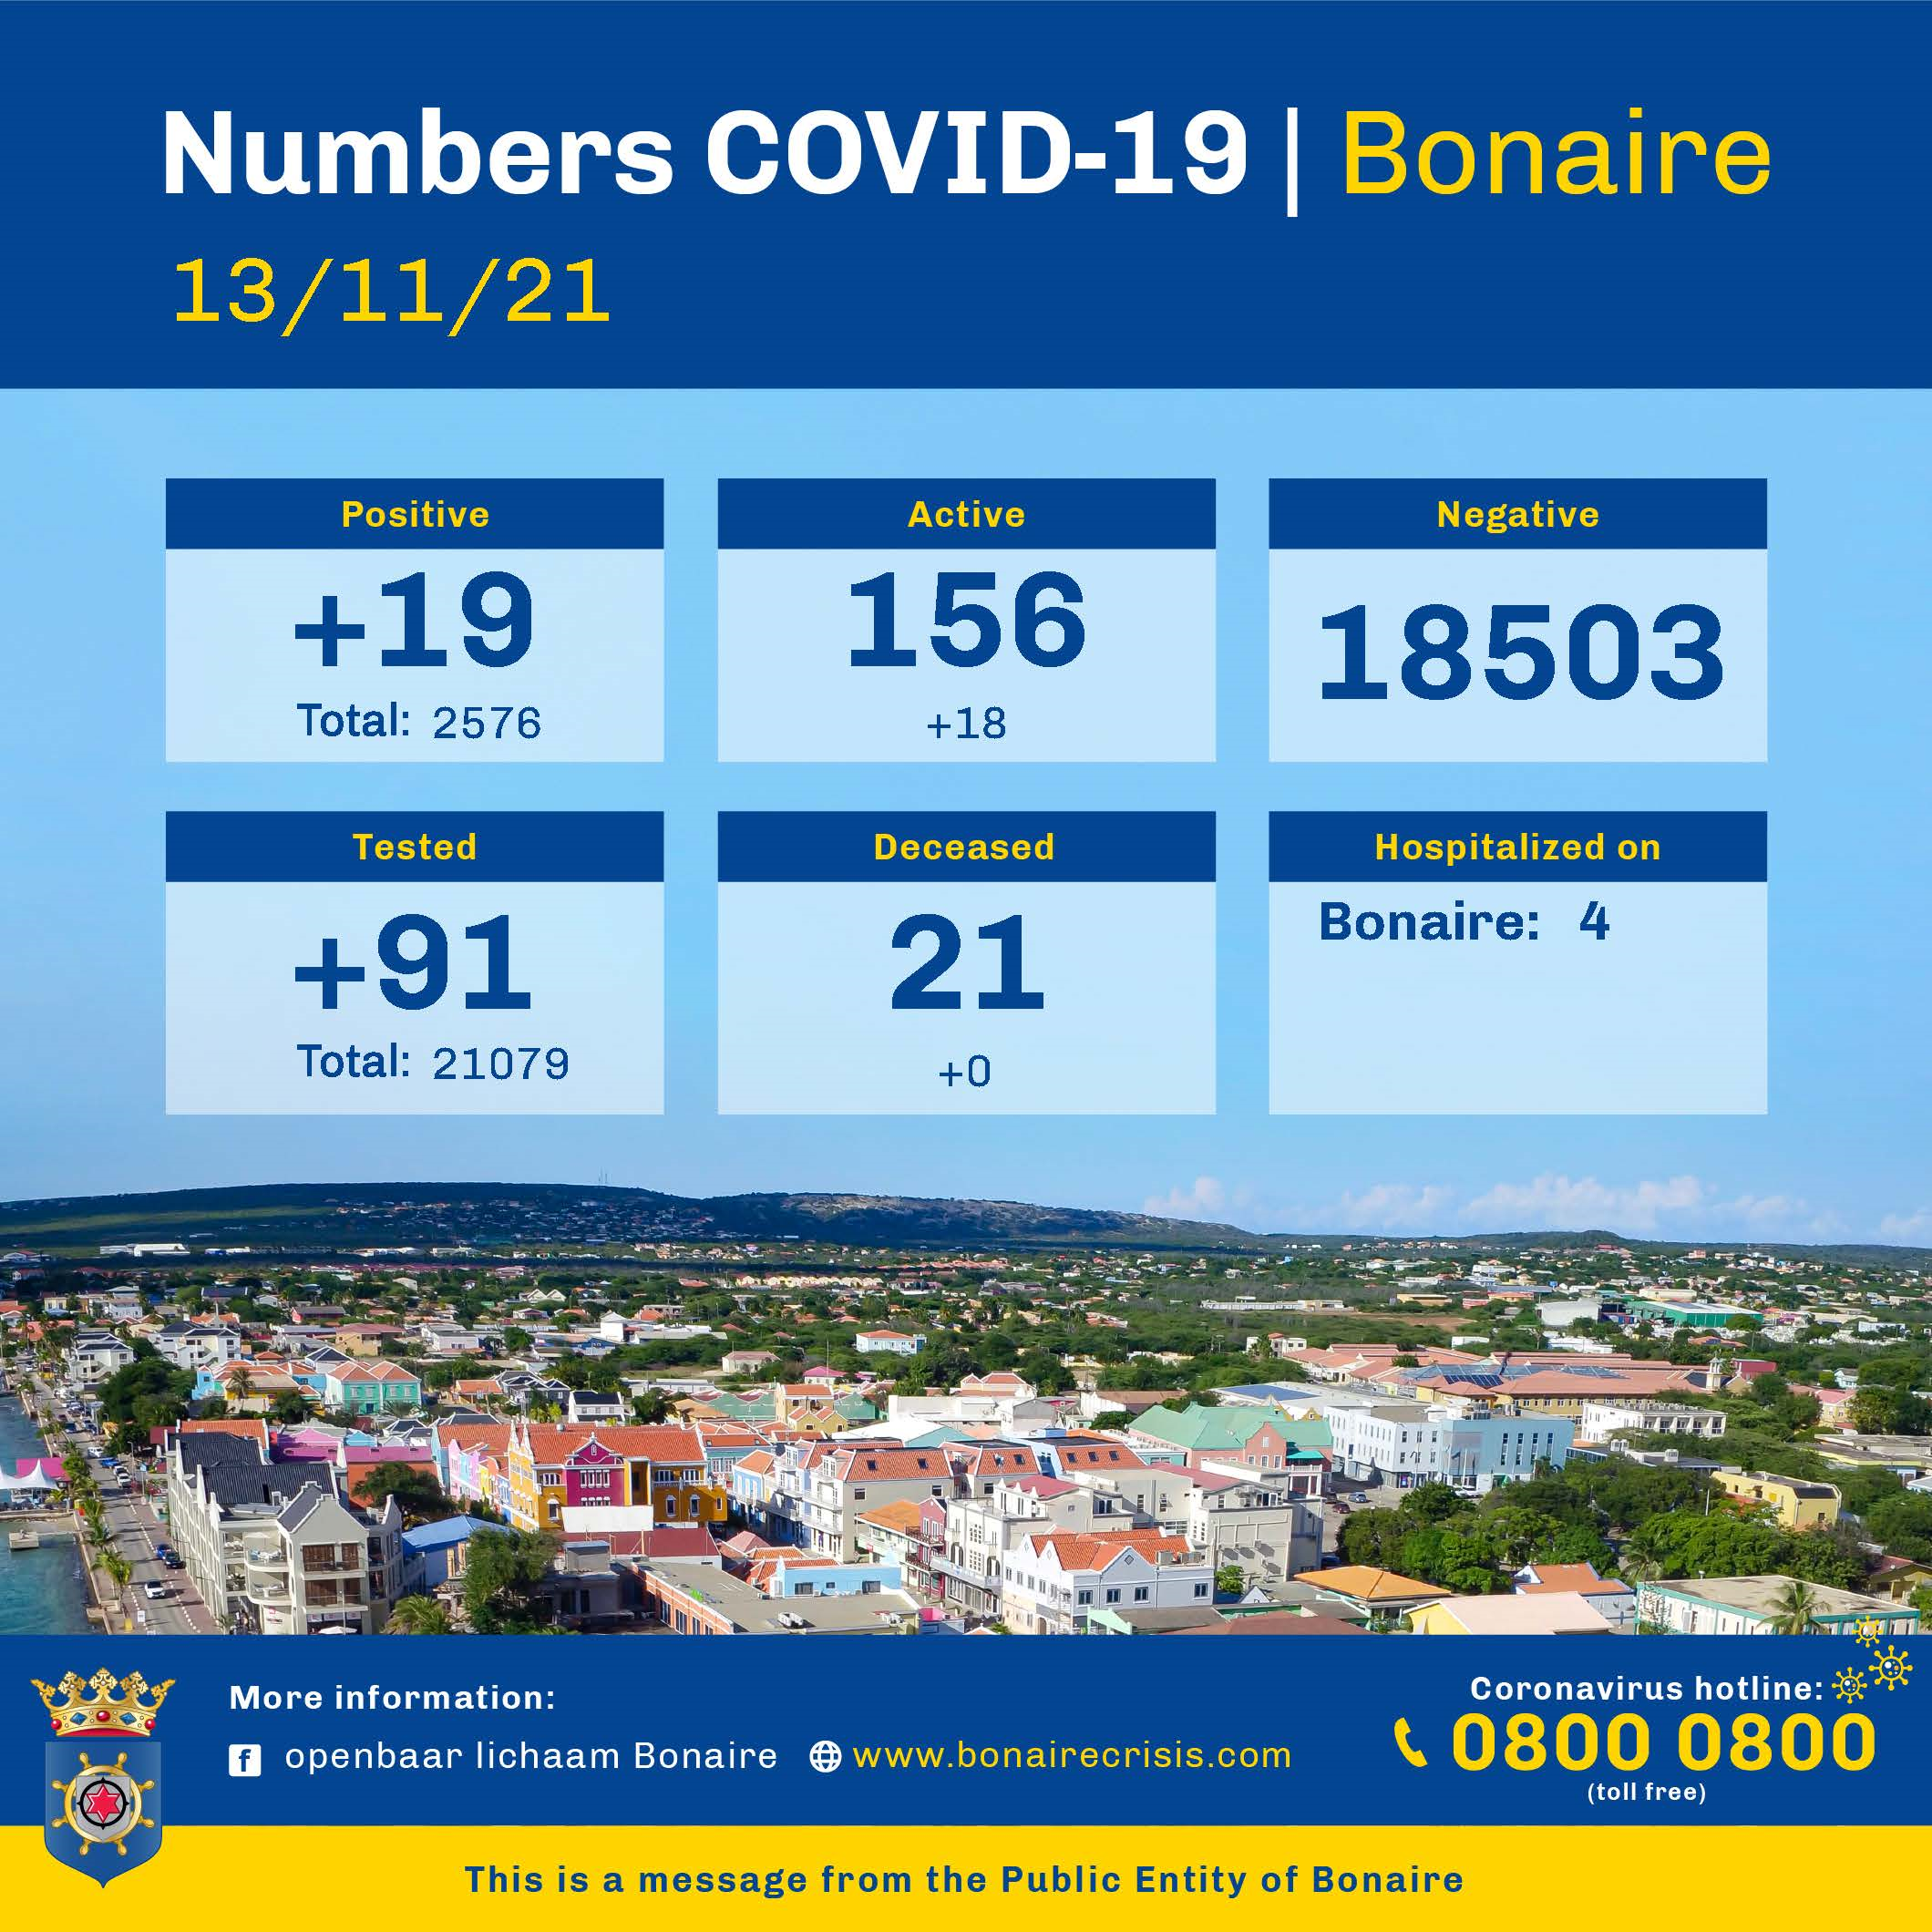 Now over 150 active Coronacases on Bonaire